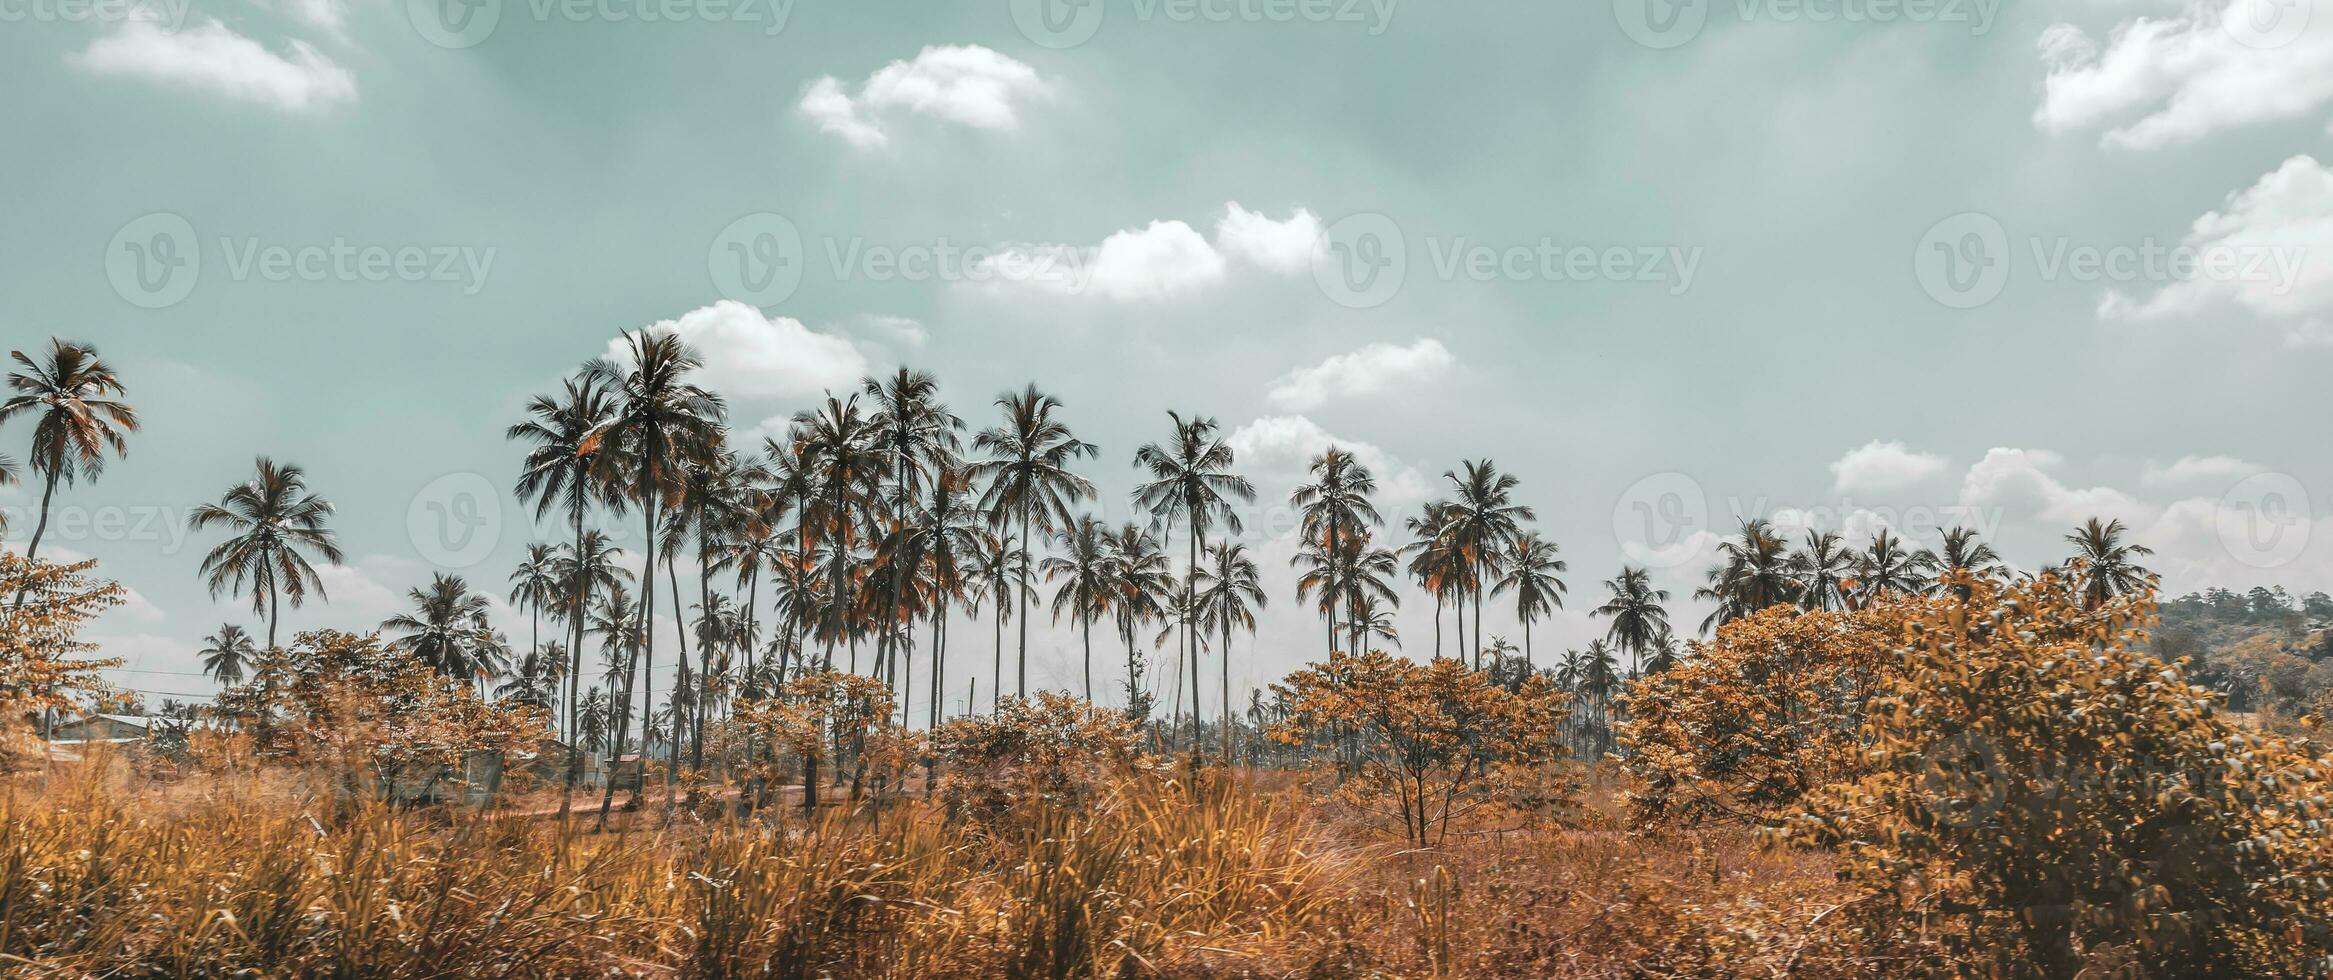 piantagione di palme foto